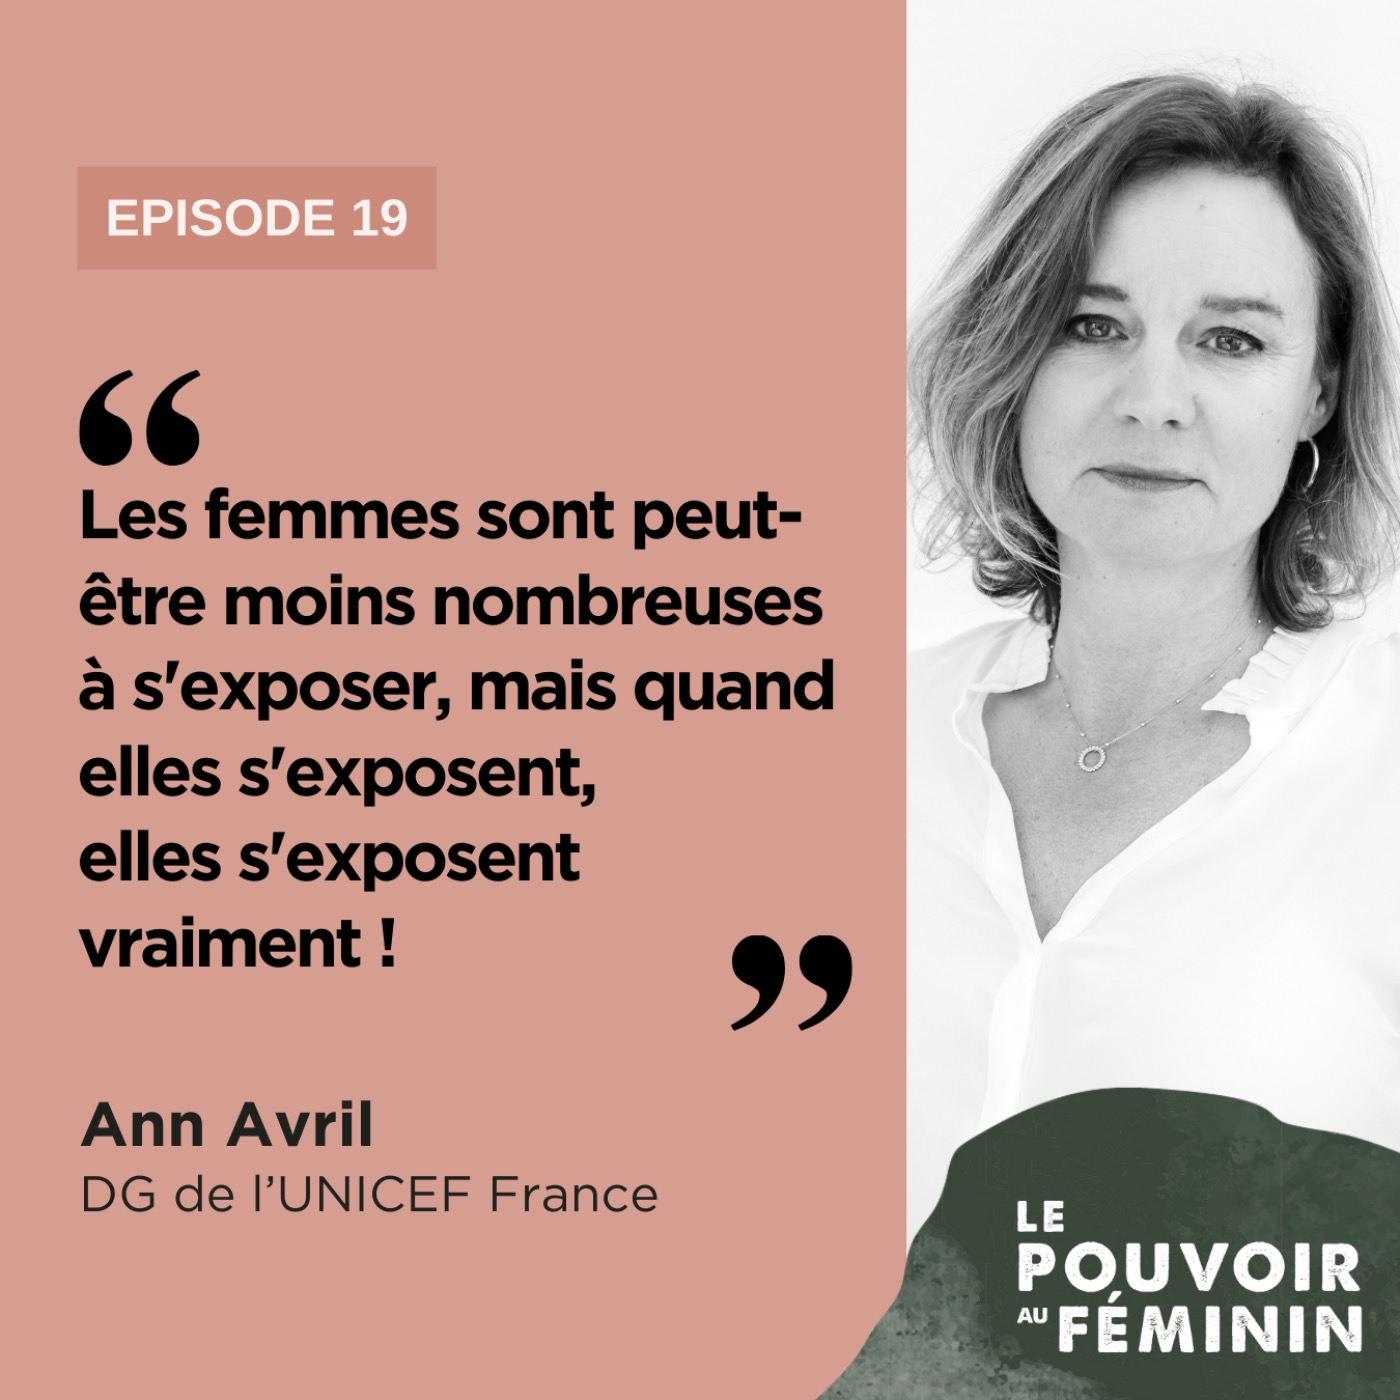 Ann Avril, DG de l'UNICEF France - "Les femmes sont peut-être moins nombreuses à s'exposer mais quand elles s'exposent, elles s'exposent vraiment !"